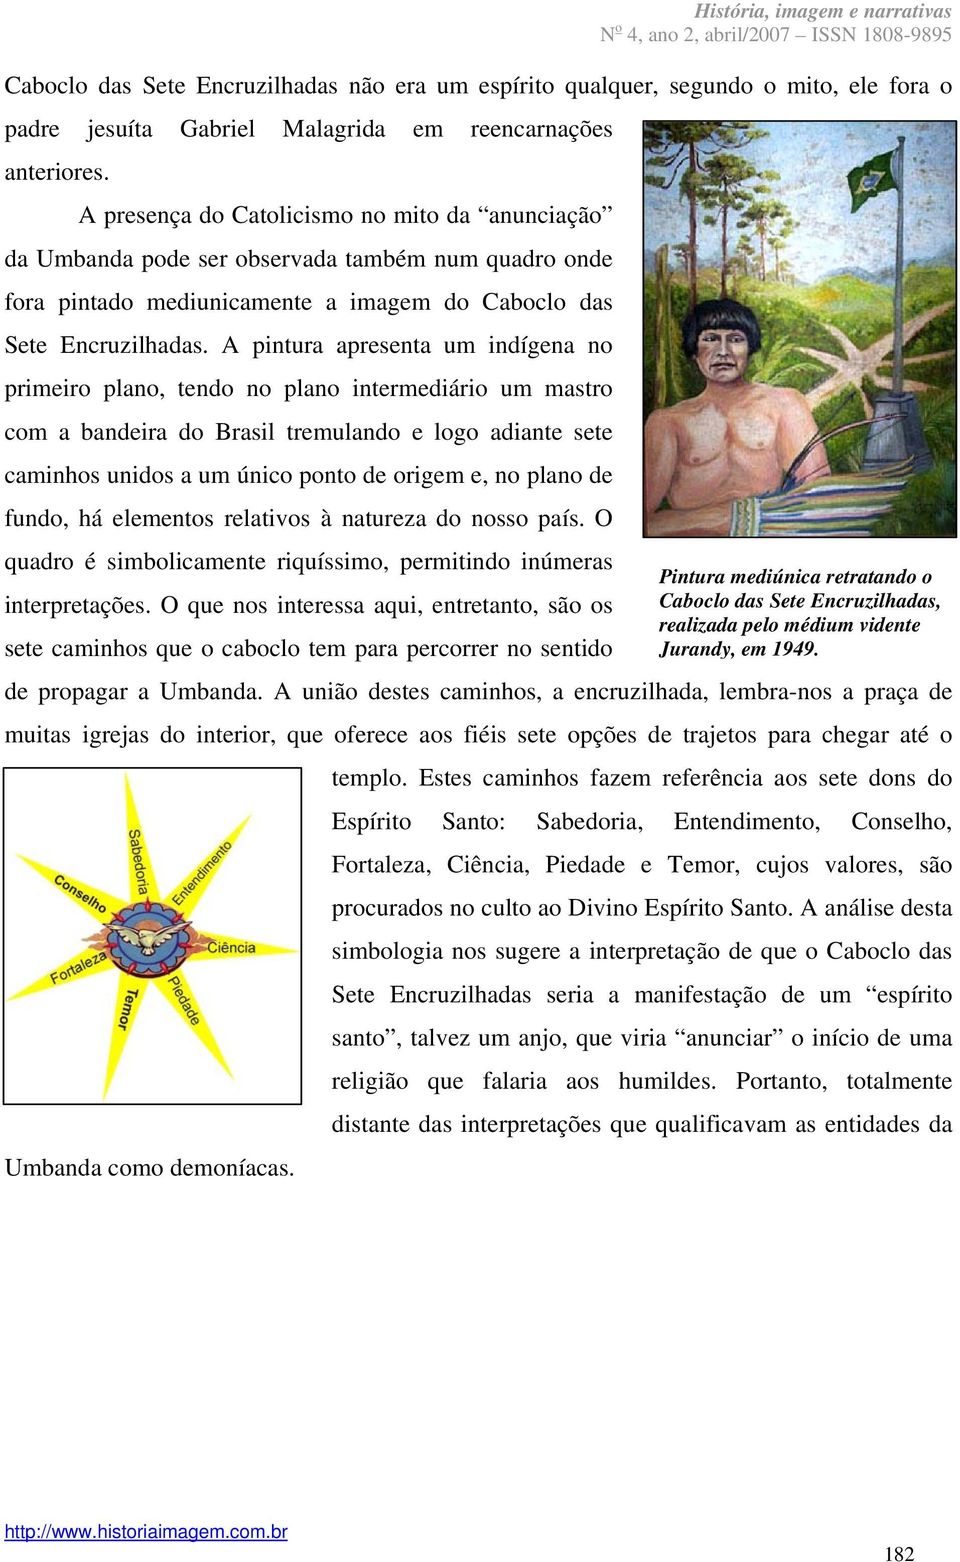 A pintura apresenta um indígena no primeiro plano, tendo no plano intermediário um mastro com a bandeira do Brasil tremulando e logo adiante sete caminhos unidos a um único ponto de origem e, no